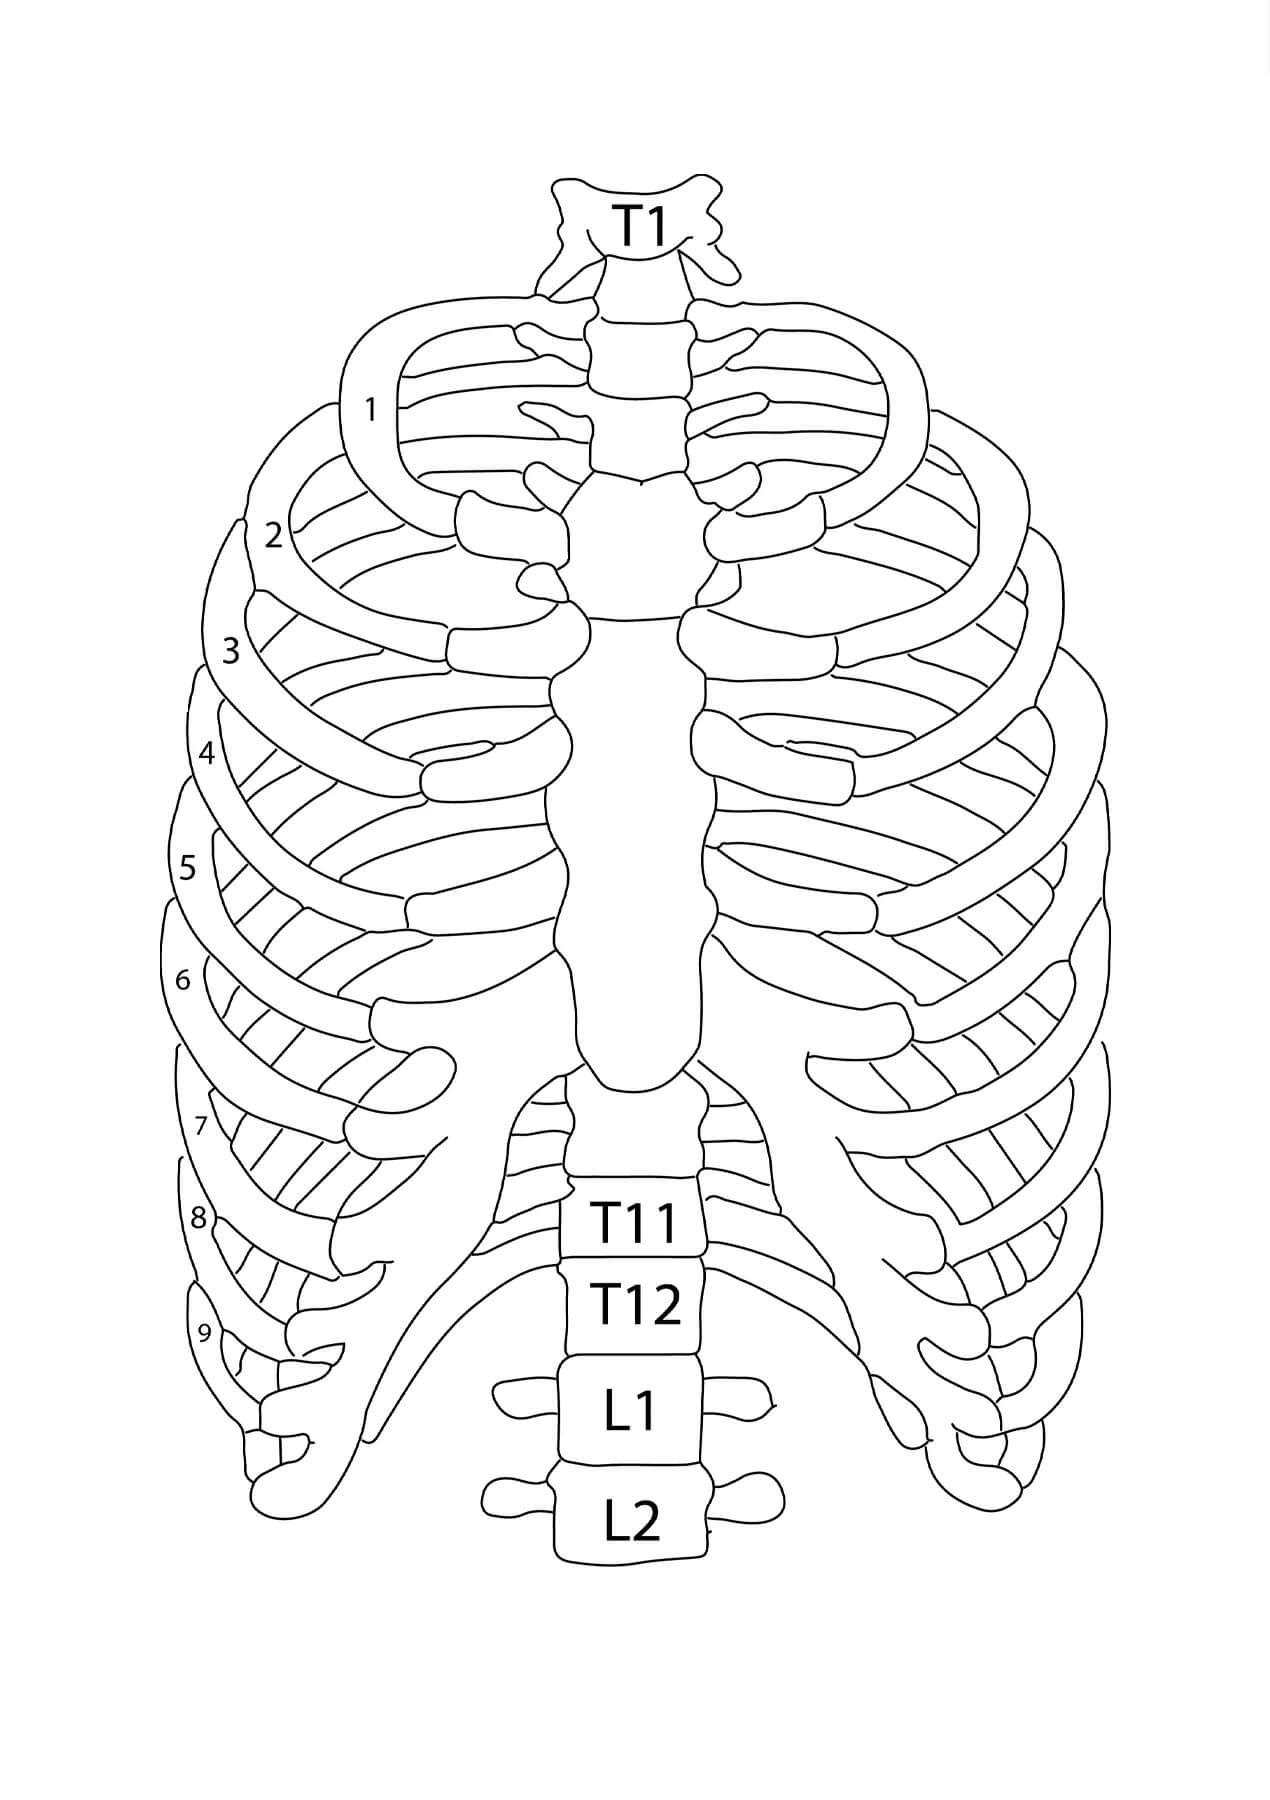 Thoraxknochen Anatomie